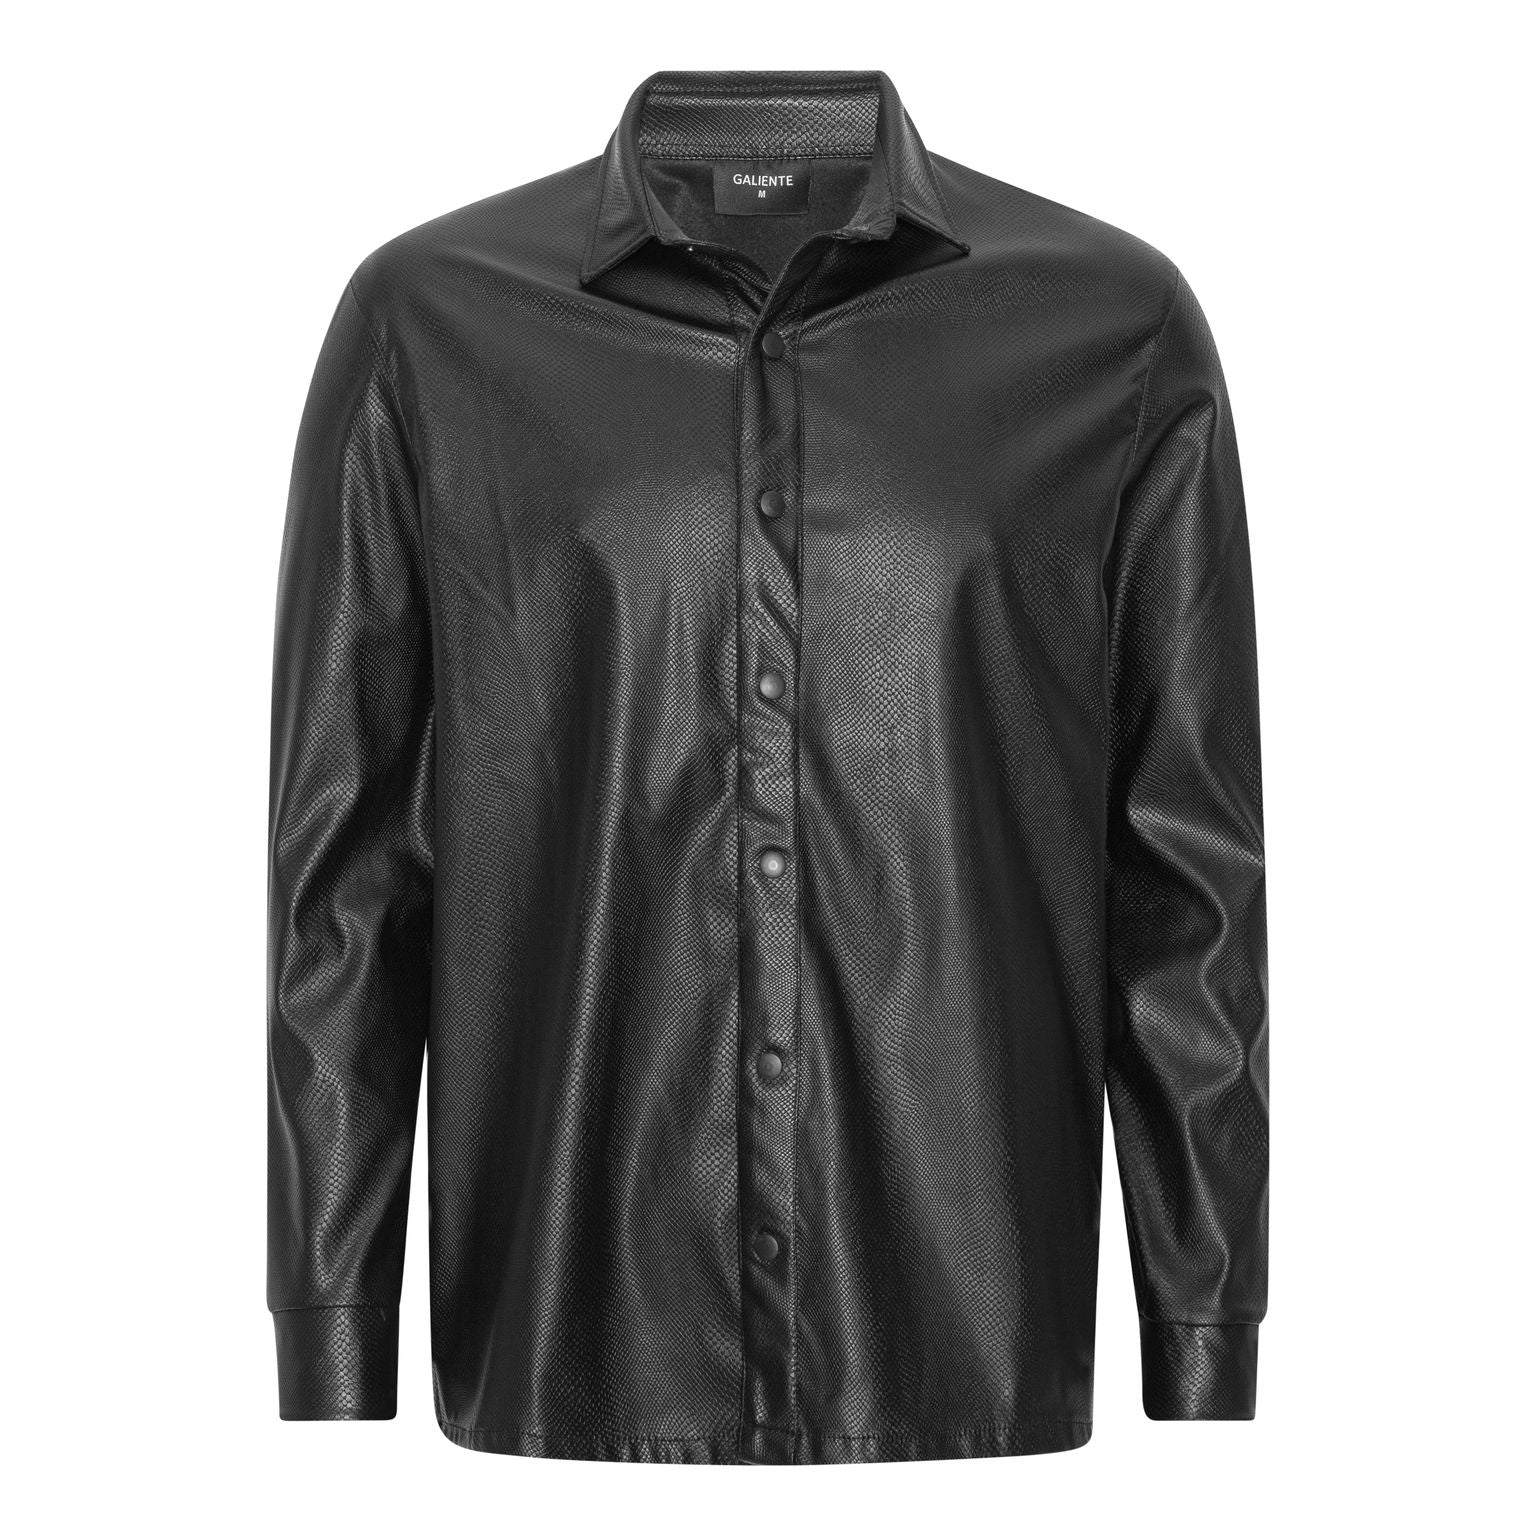 black patterned imitation leather shirt